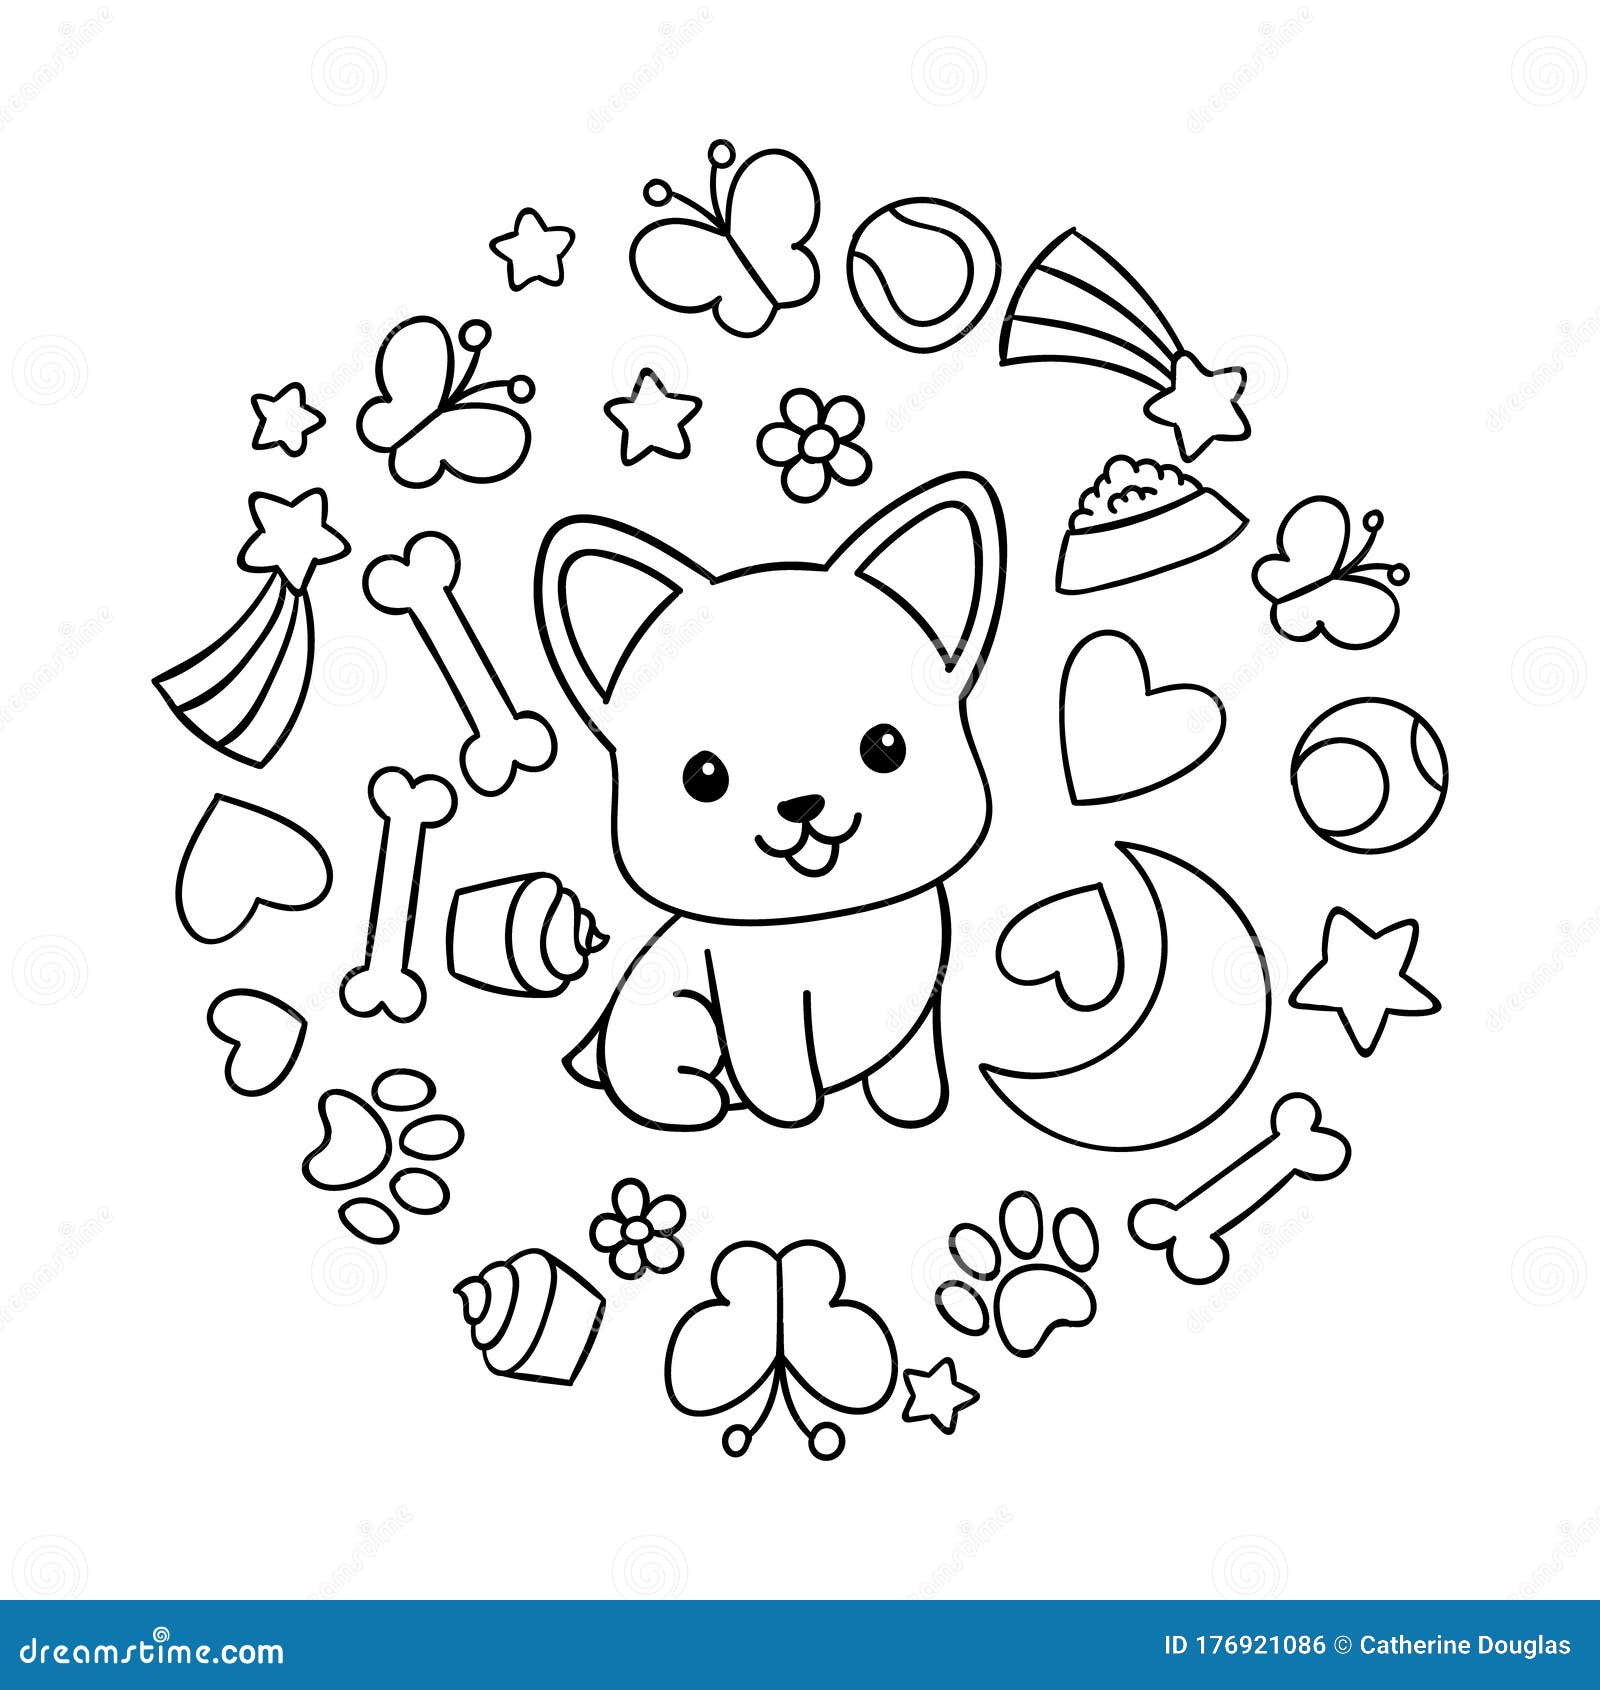 Coloring pages black and white cute kawaii hand drawn corgi dog doodles circle print stock vector